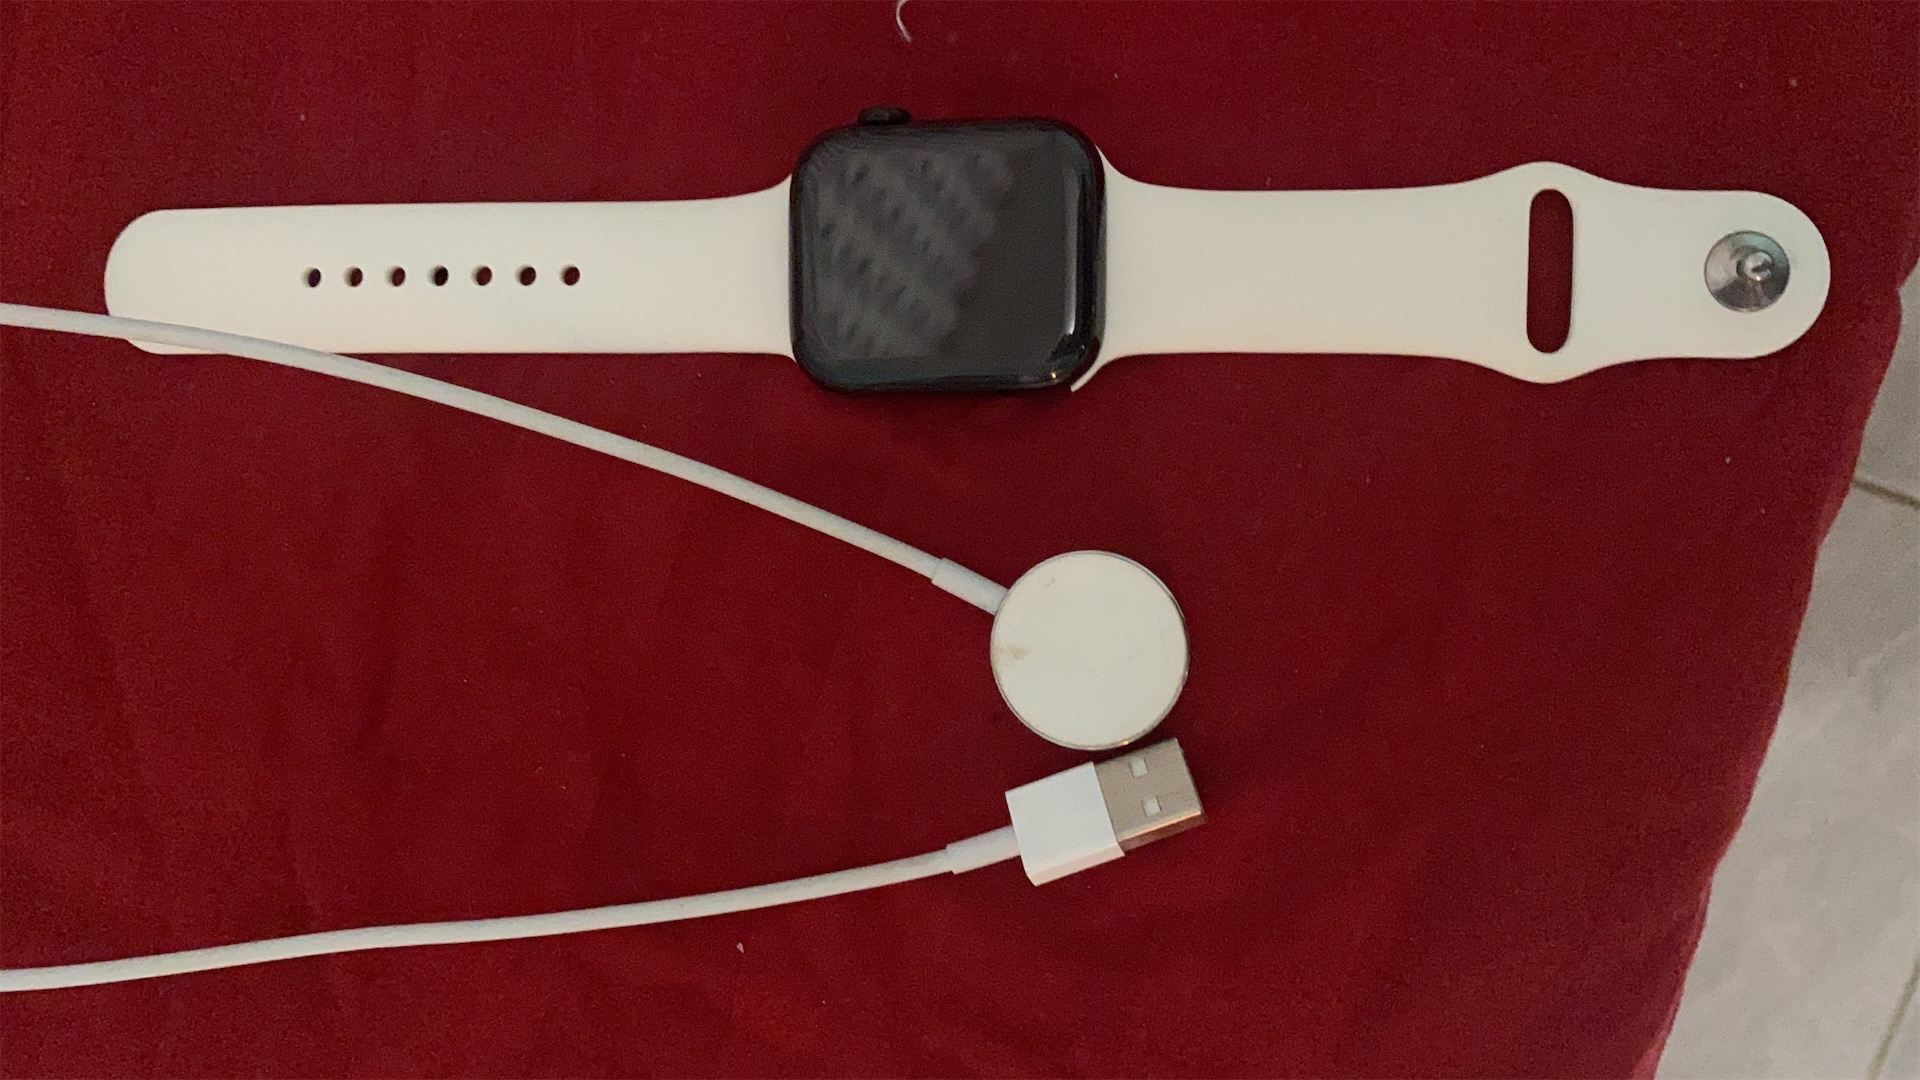 accesorios para electronica - Apple Watch